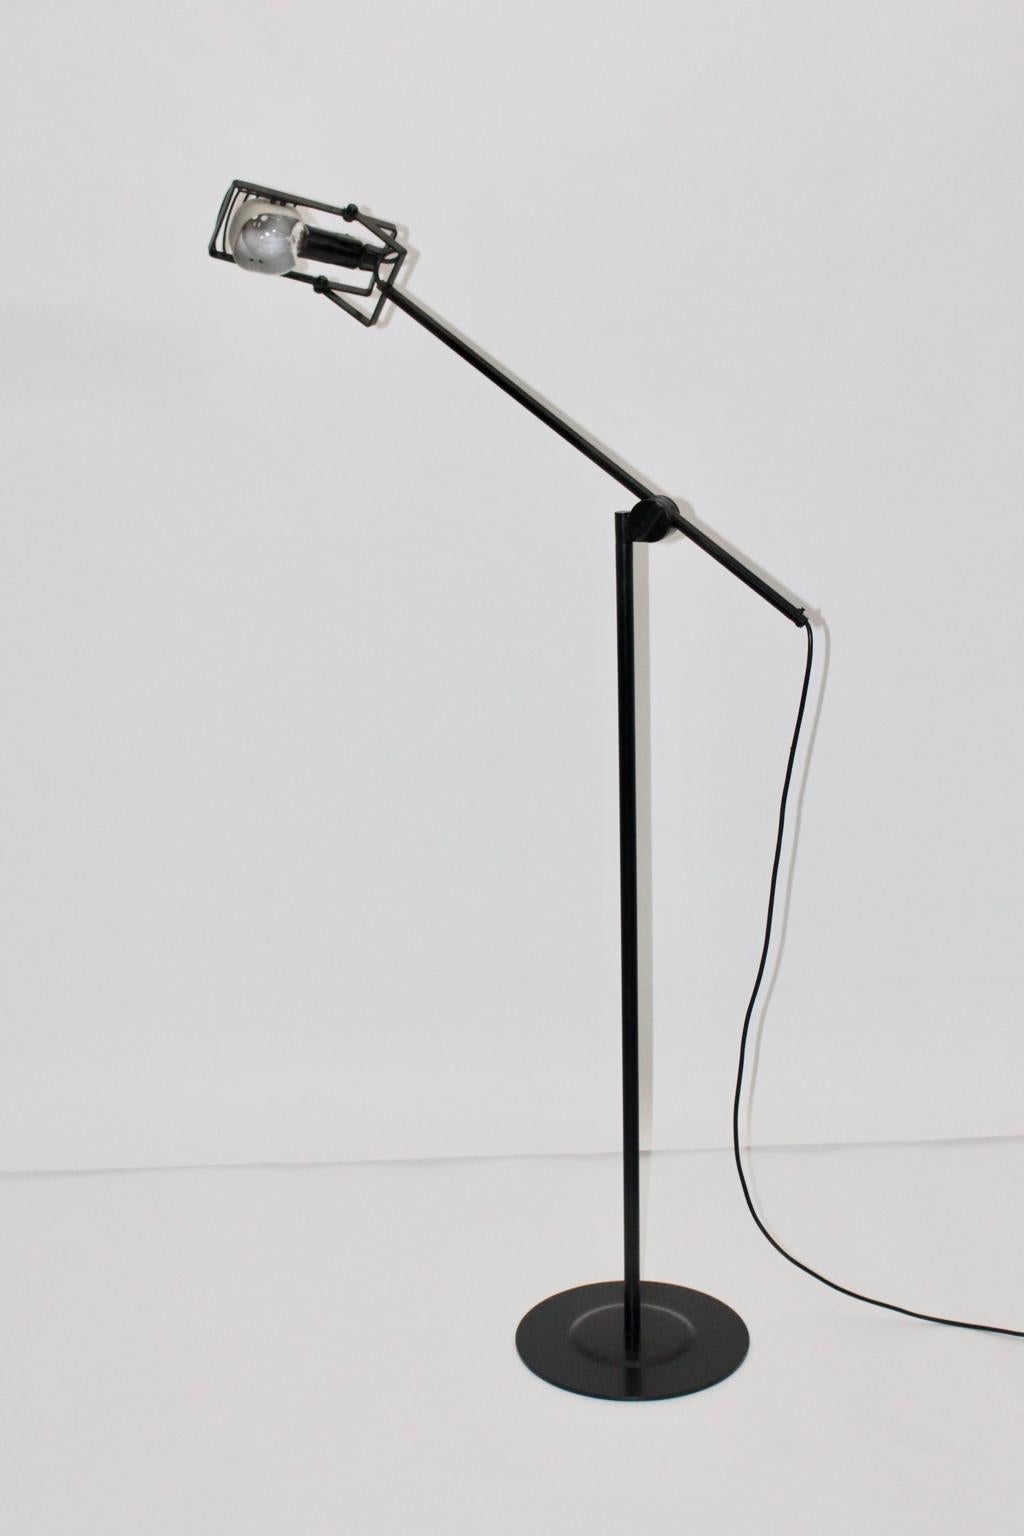 Black Floor Lamp by Ernesto Gismondi 1970 for Artemide Italy Metal, Plastic 1